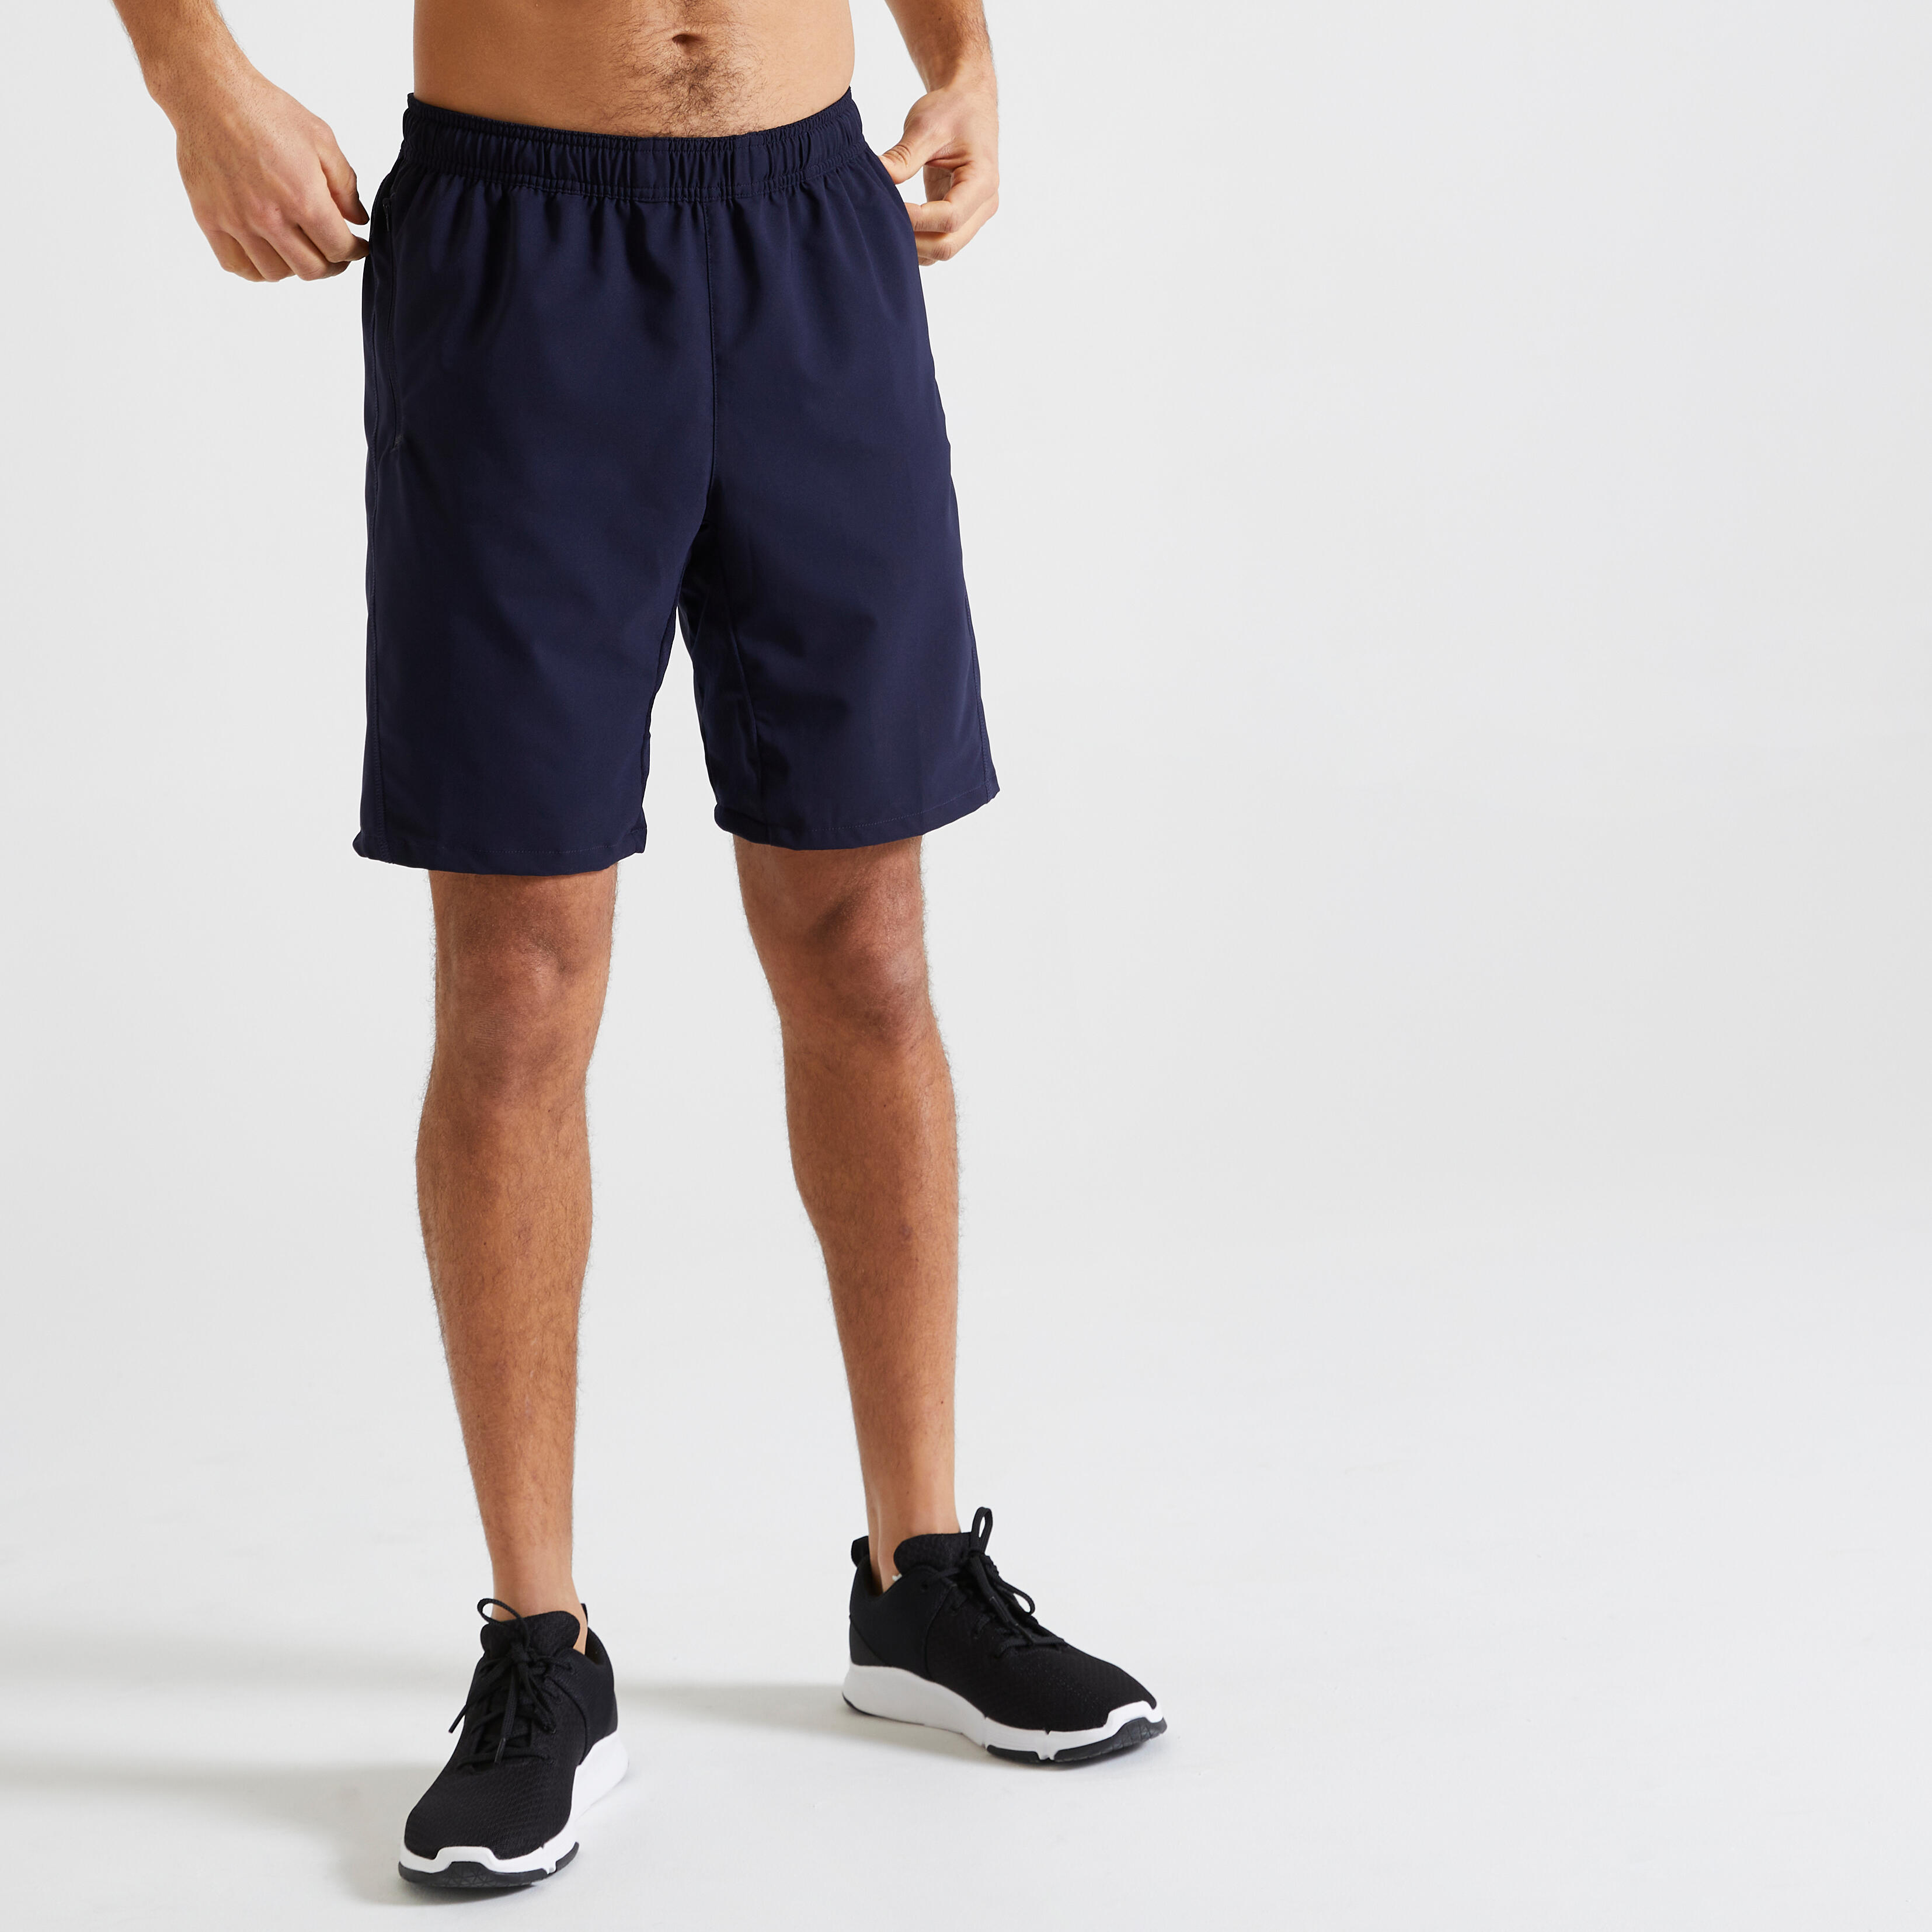 Pantalon scurt 120 fitness respirant cu buzunare cu fermoar bleumarin bărbați decathlon.ro  Imbracaminte fitness barbati